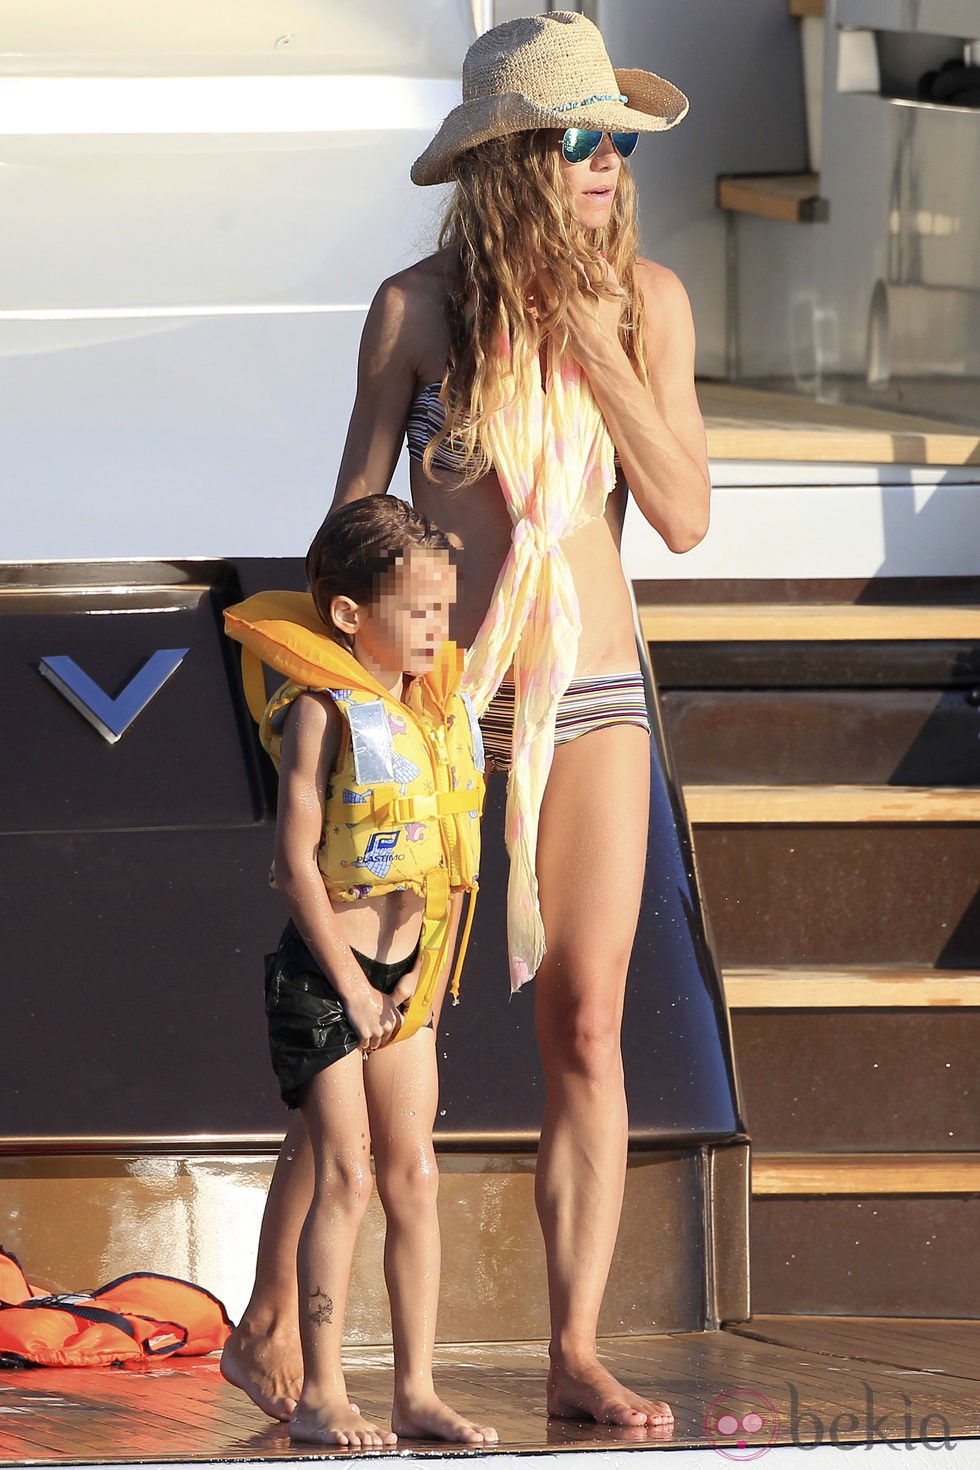 Blanca Cuesta con su hijo Sacha en un barco en Ibiza